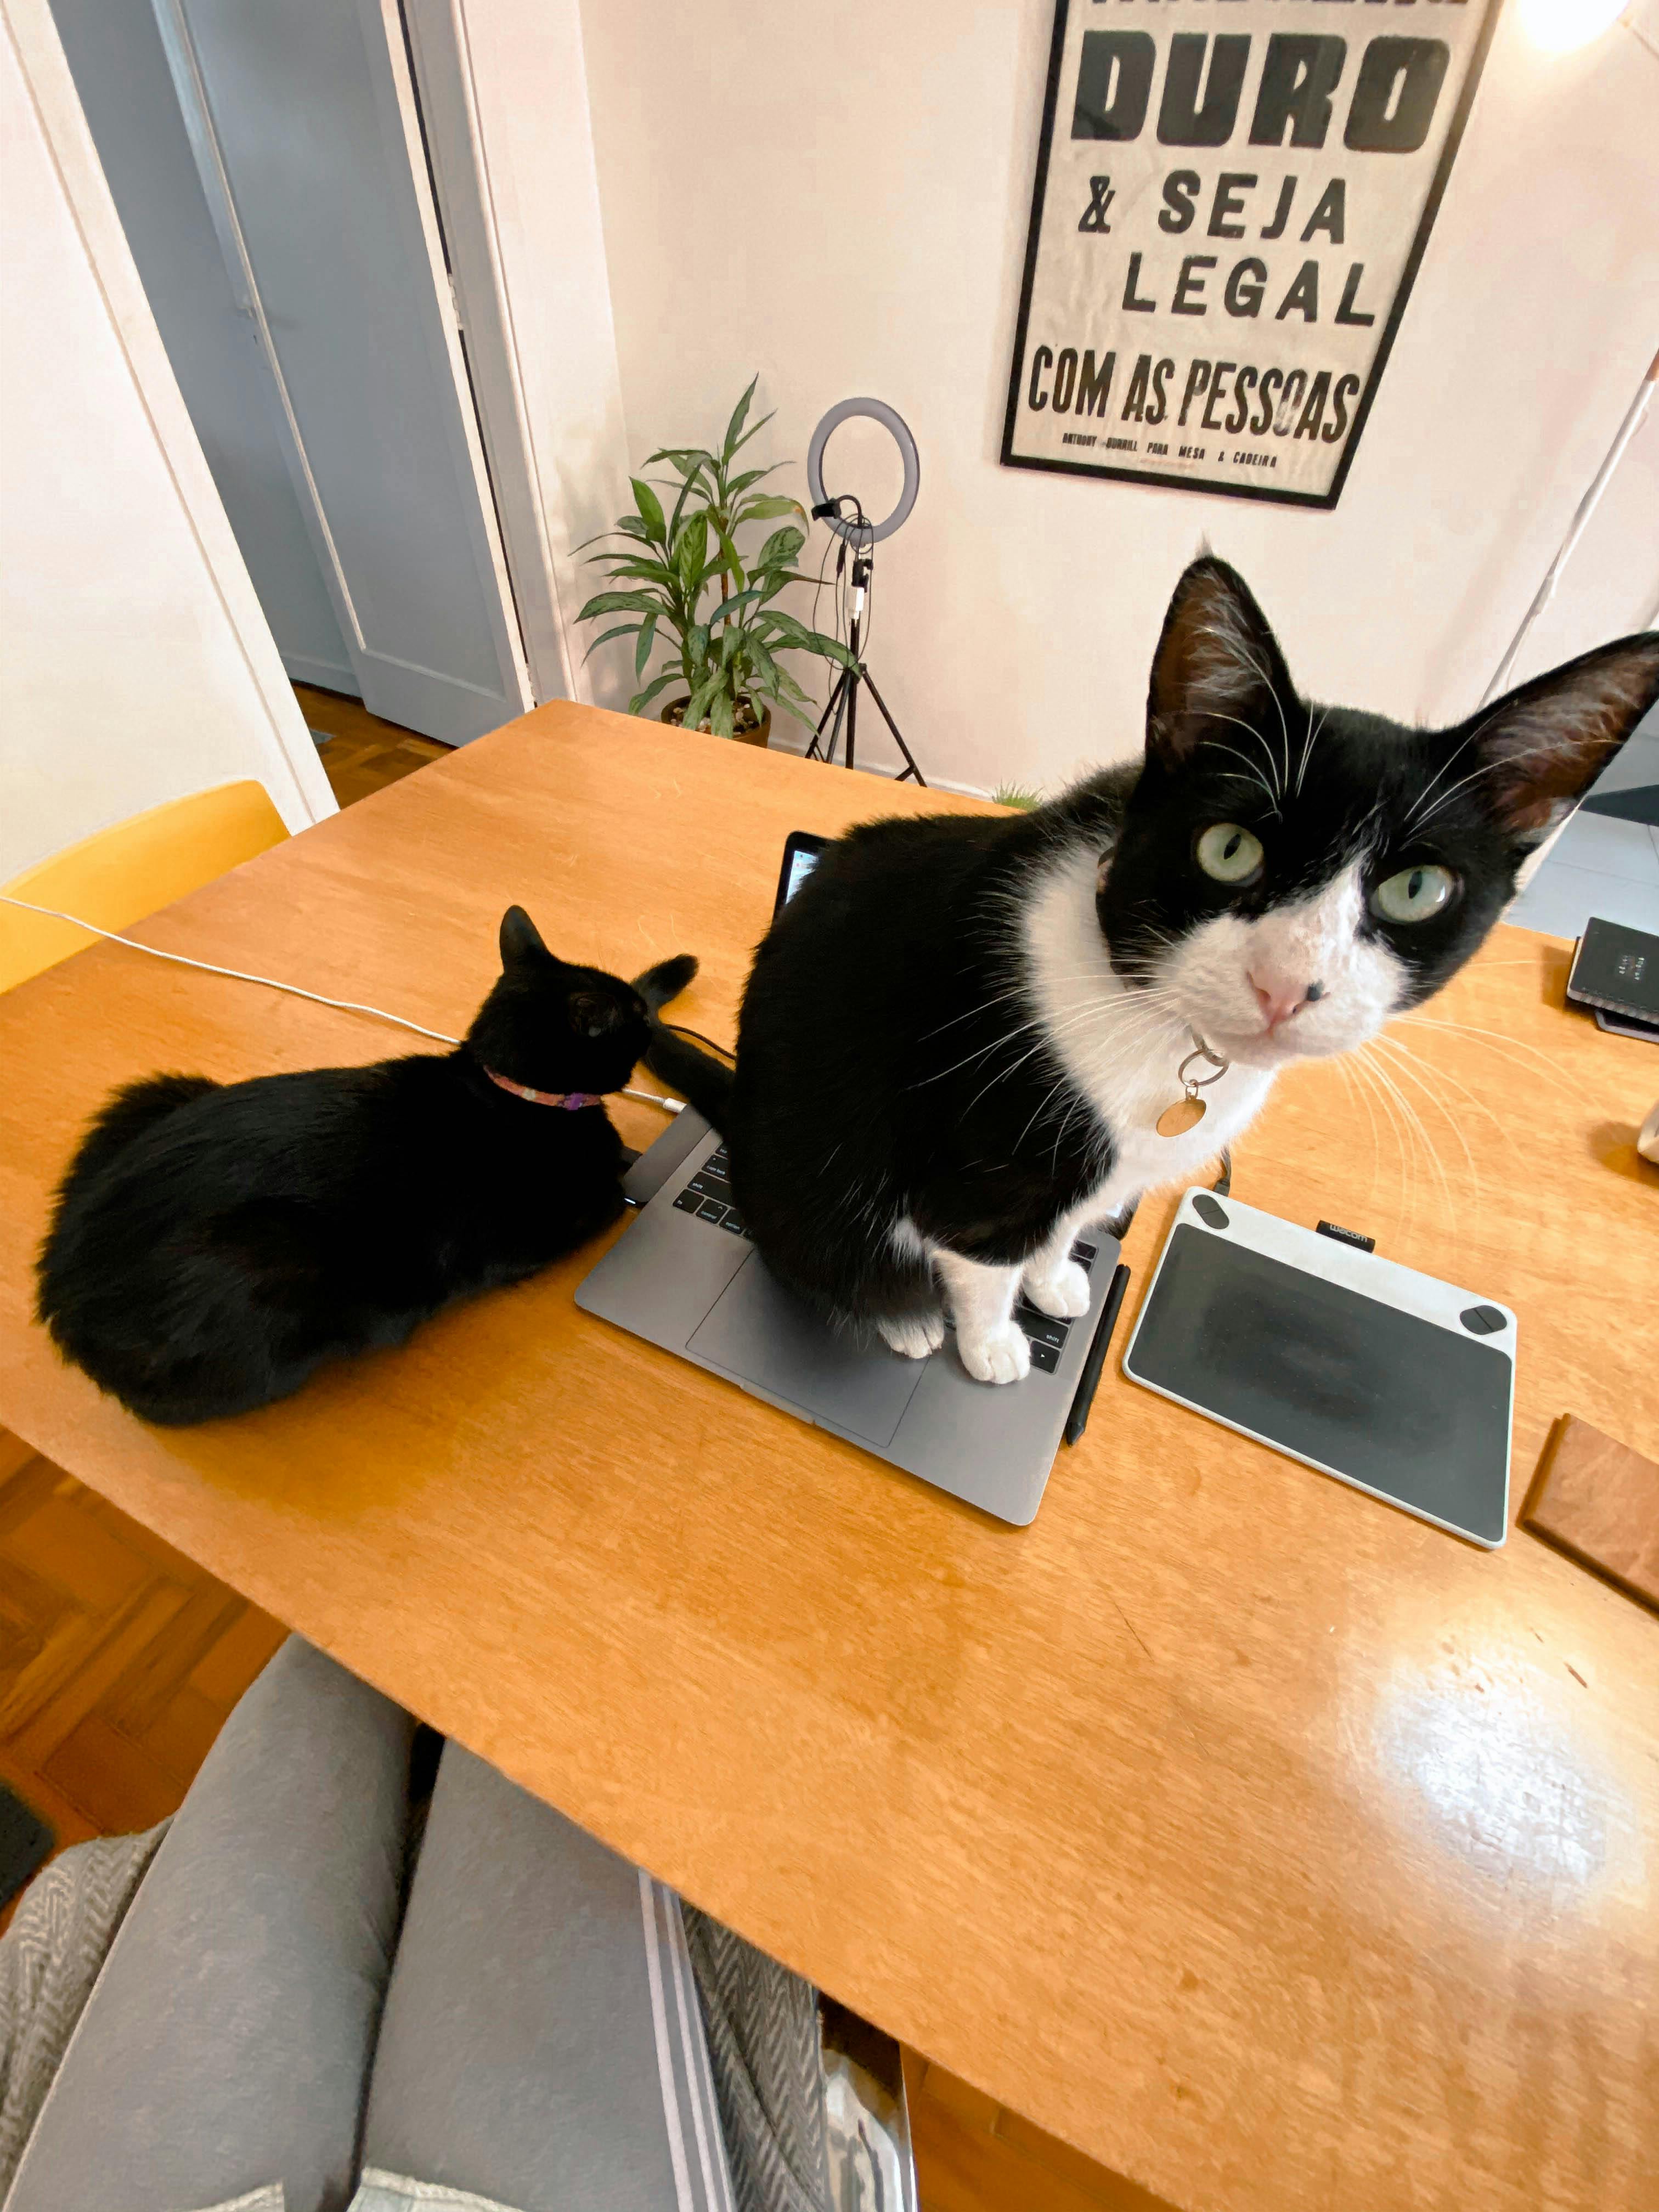 Imagem com uma mesa de trabalho e um gato em cima do computador. Outro gato descansa ao lado do computador.